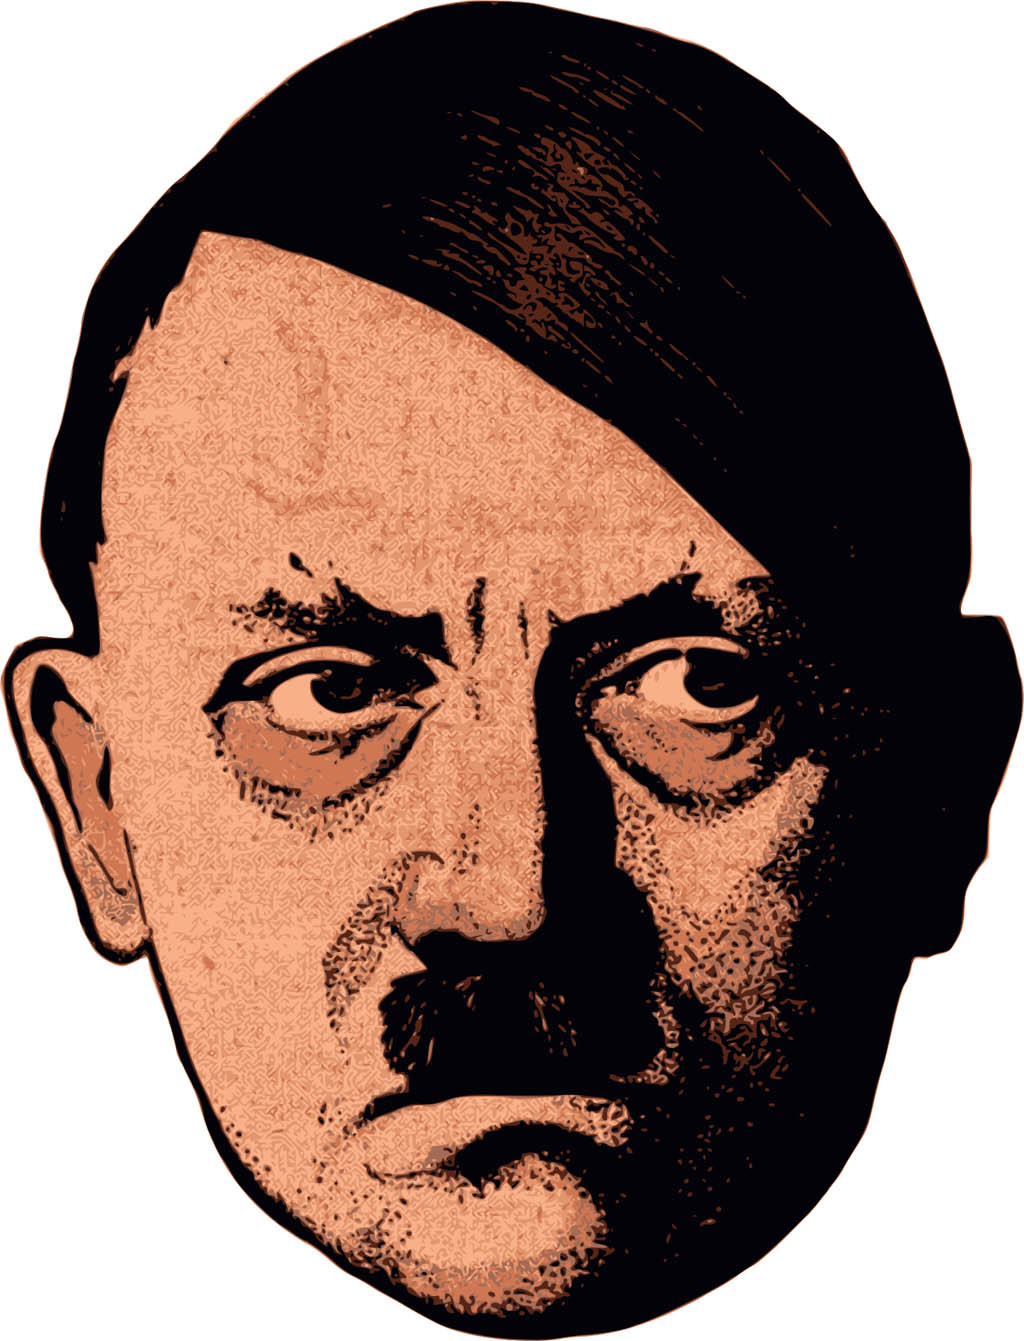 Com’è morto Adolf Hitler